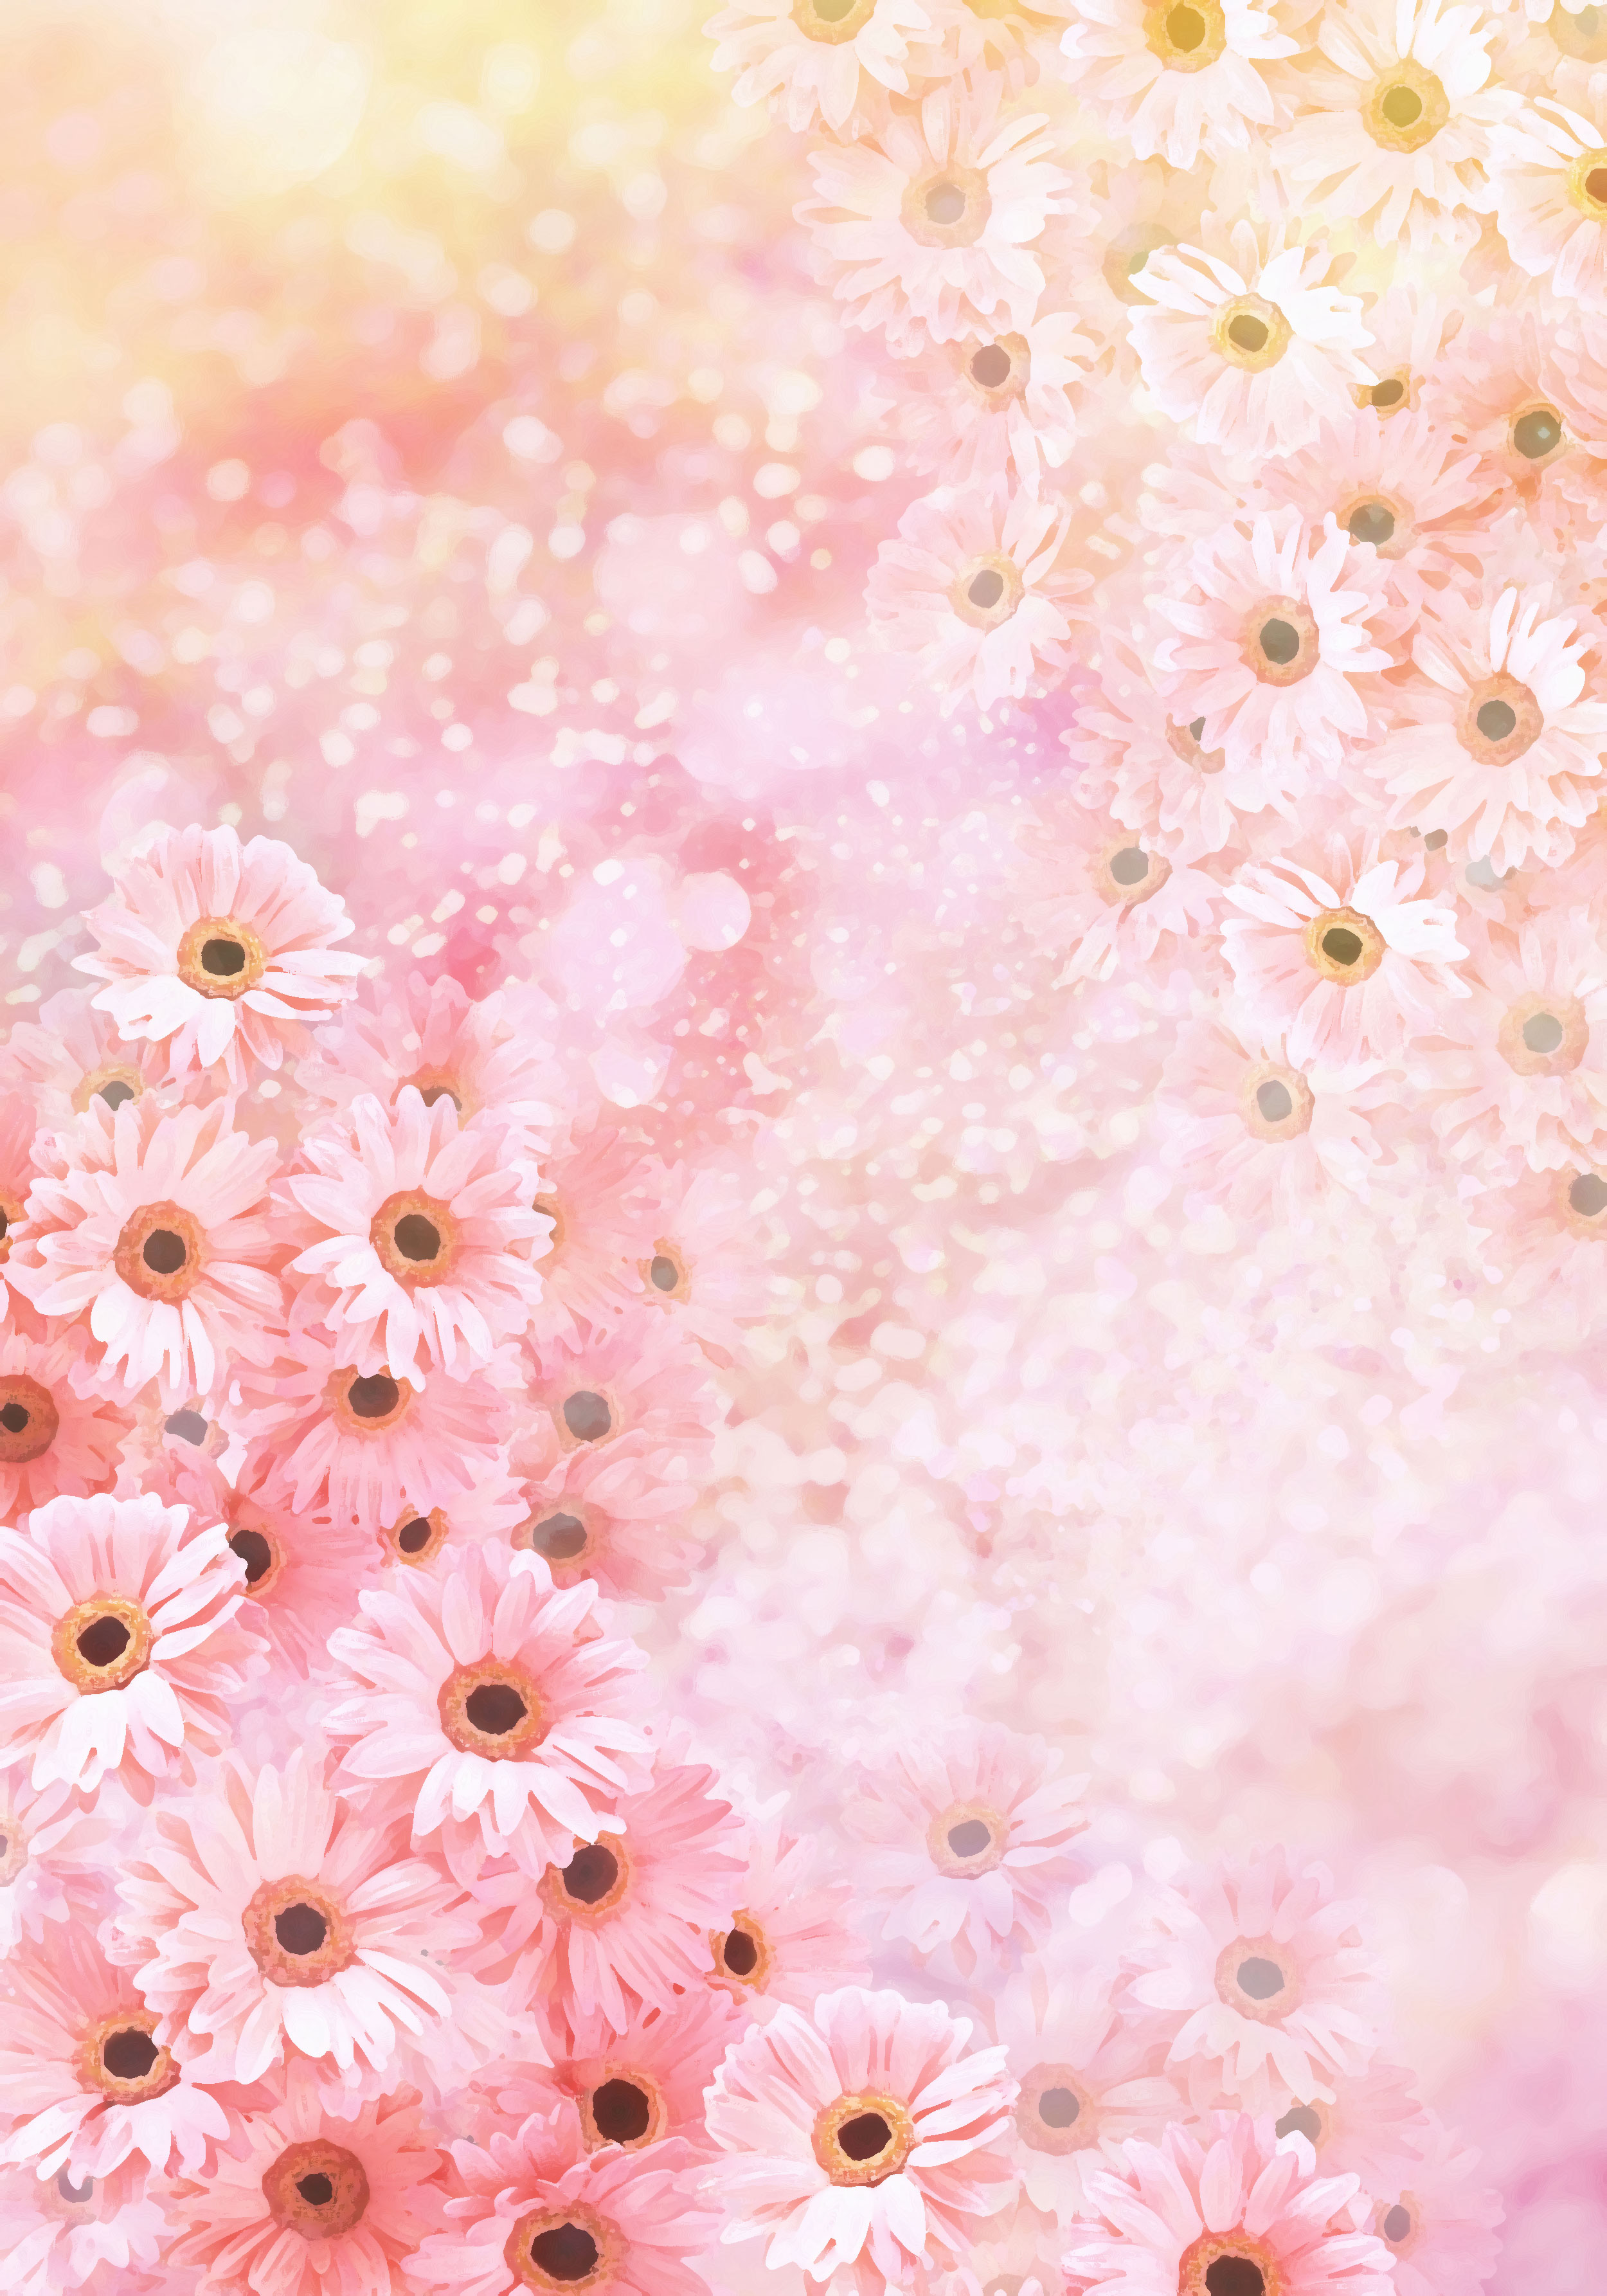 花のイラスト フリー素材 壁紙 背景no 048 ピンク 淡い色彩